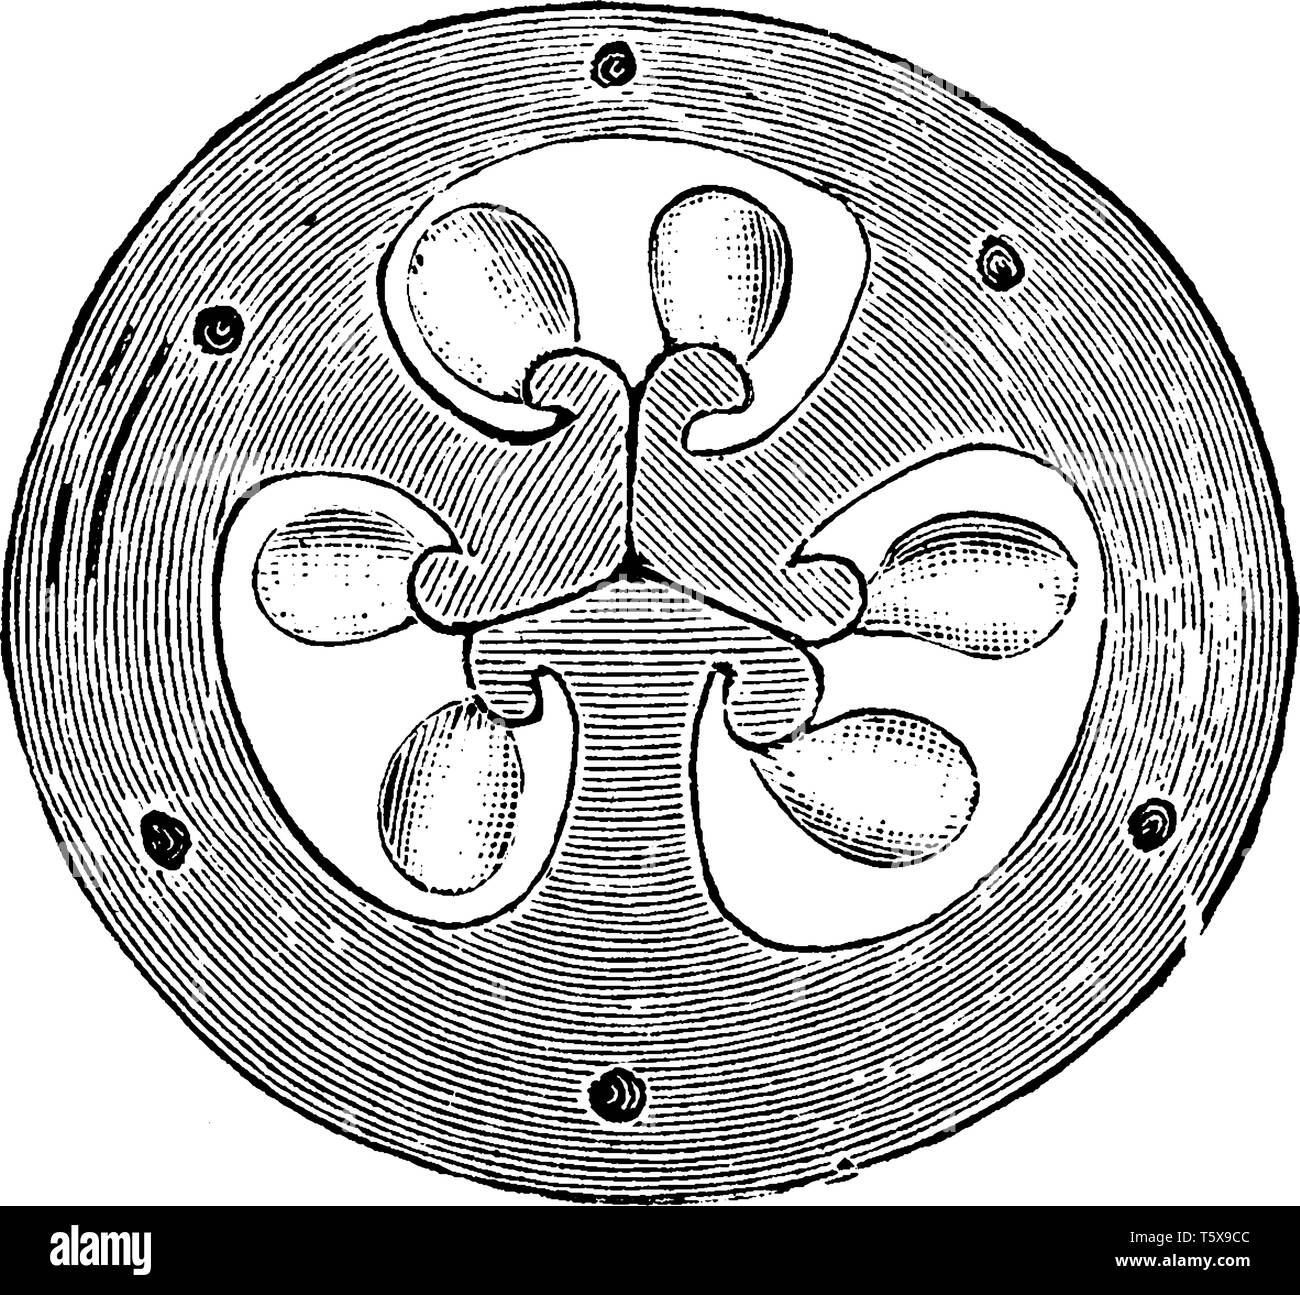 La sezione trasversale dell'ovaio del fiore di iris. La sua mostra tre carpels unite al centro in una massa. Le tre parti sono chiaramente identificabili. Vi Illustrazione Vettoriale